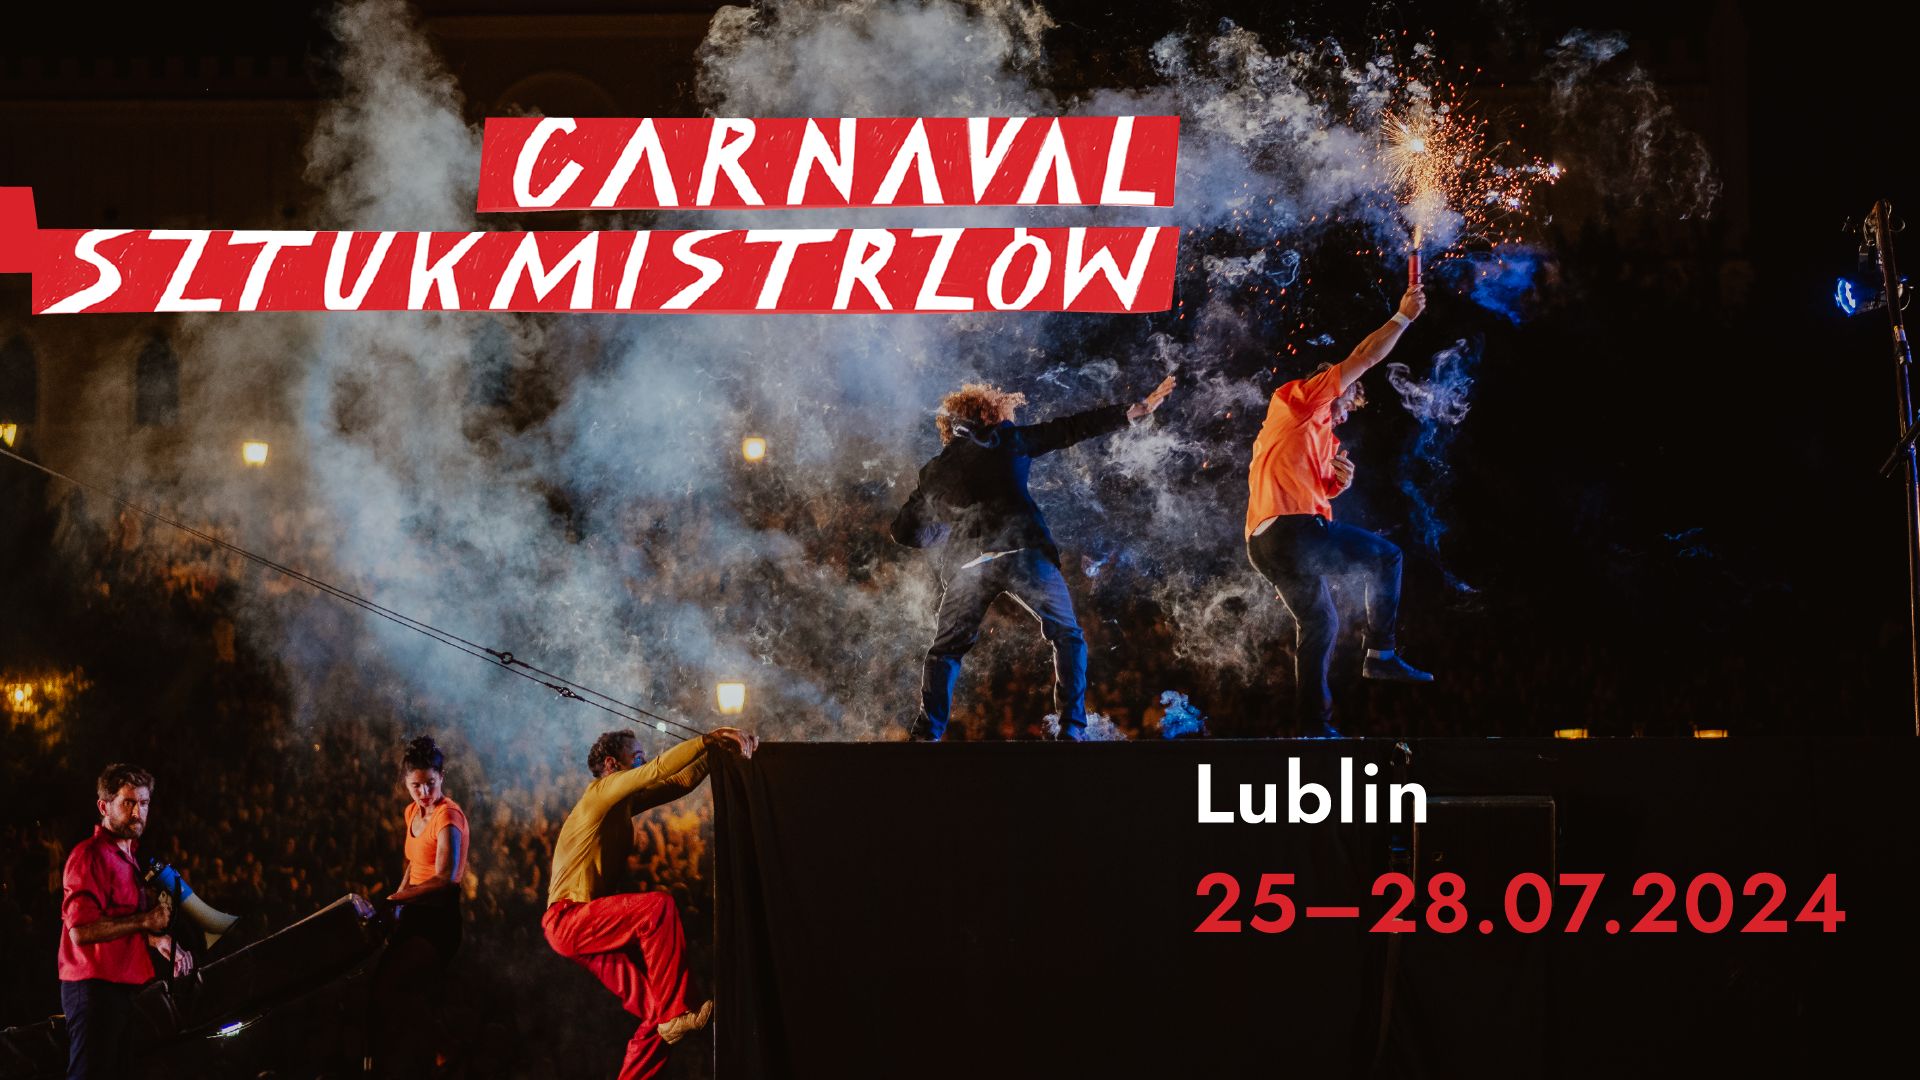 Artyści skaczą po rampie samochodu. Mają w rękach race. Logo Carnavalu Sztukmistrzów. Napis: Lublin 25-27.07.2024